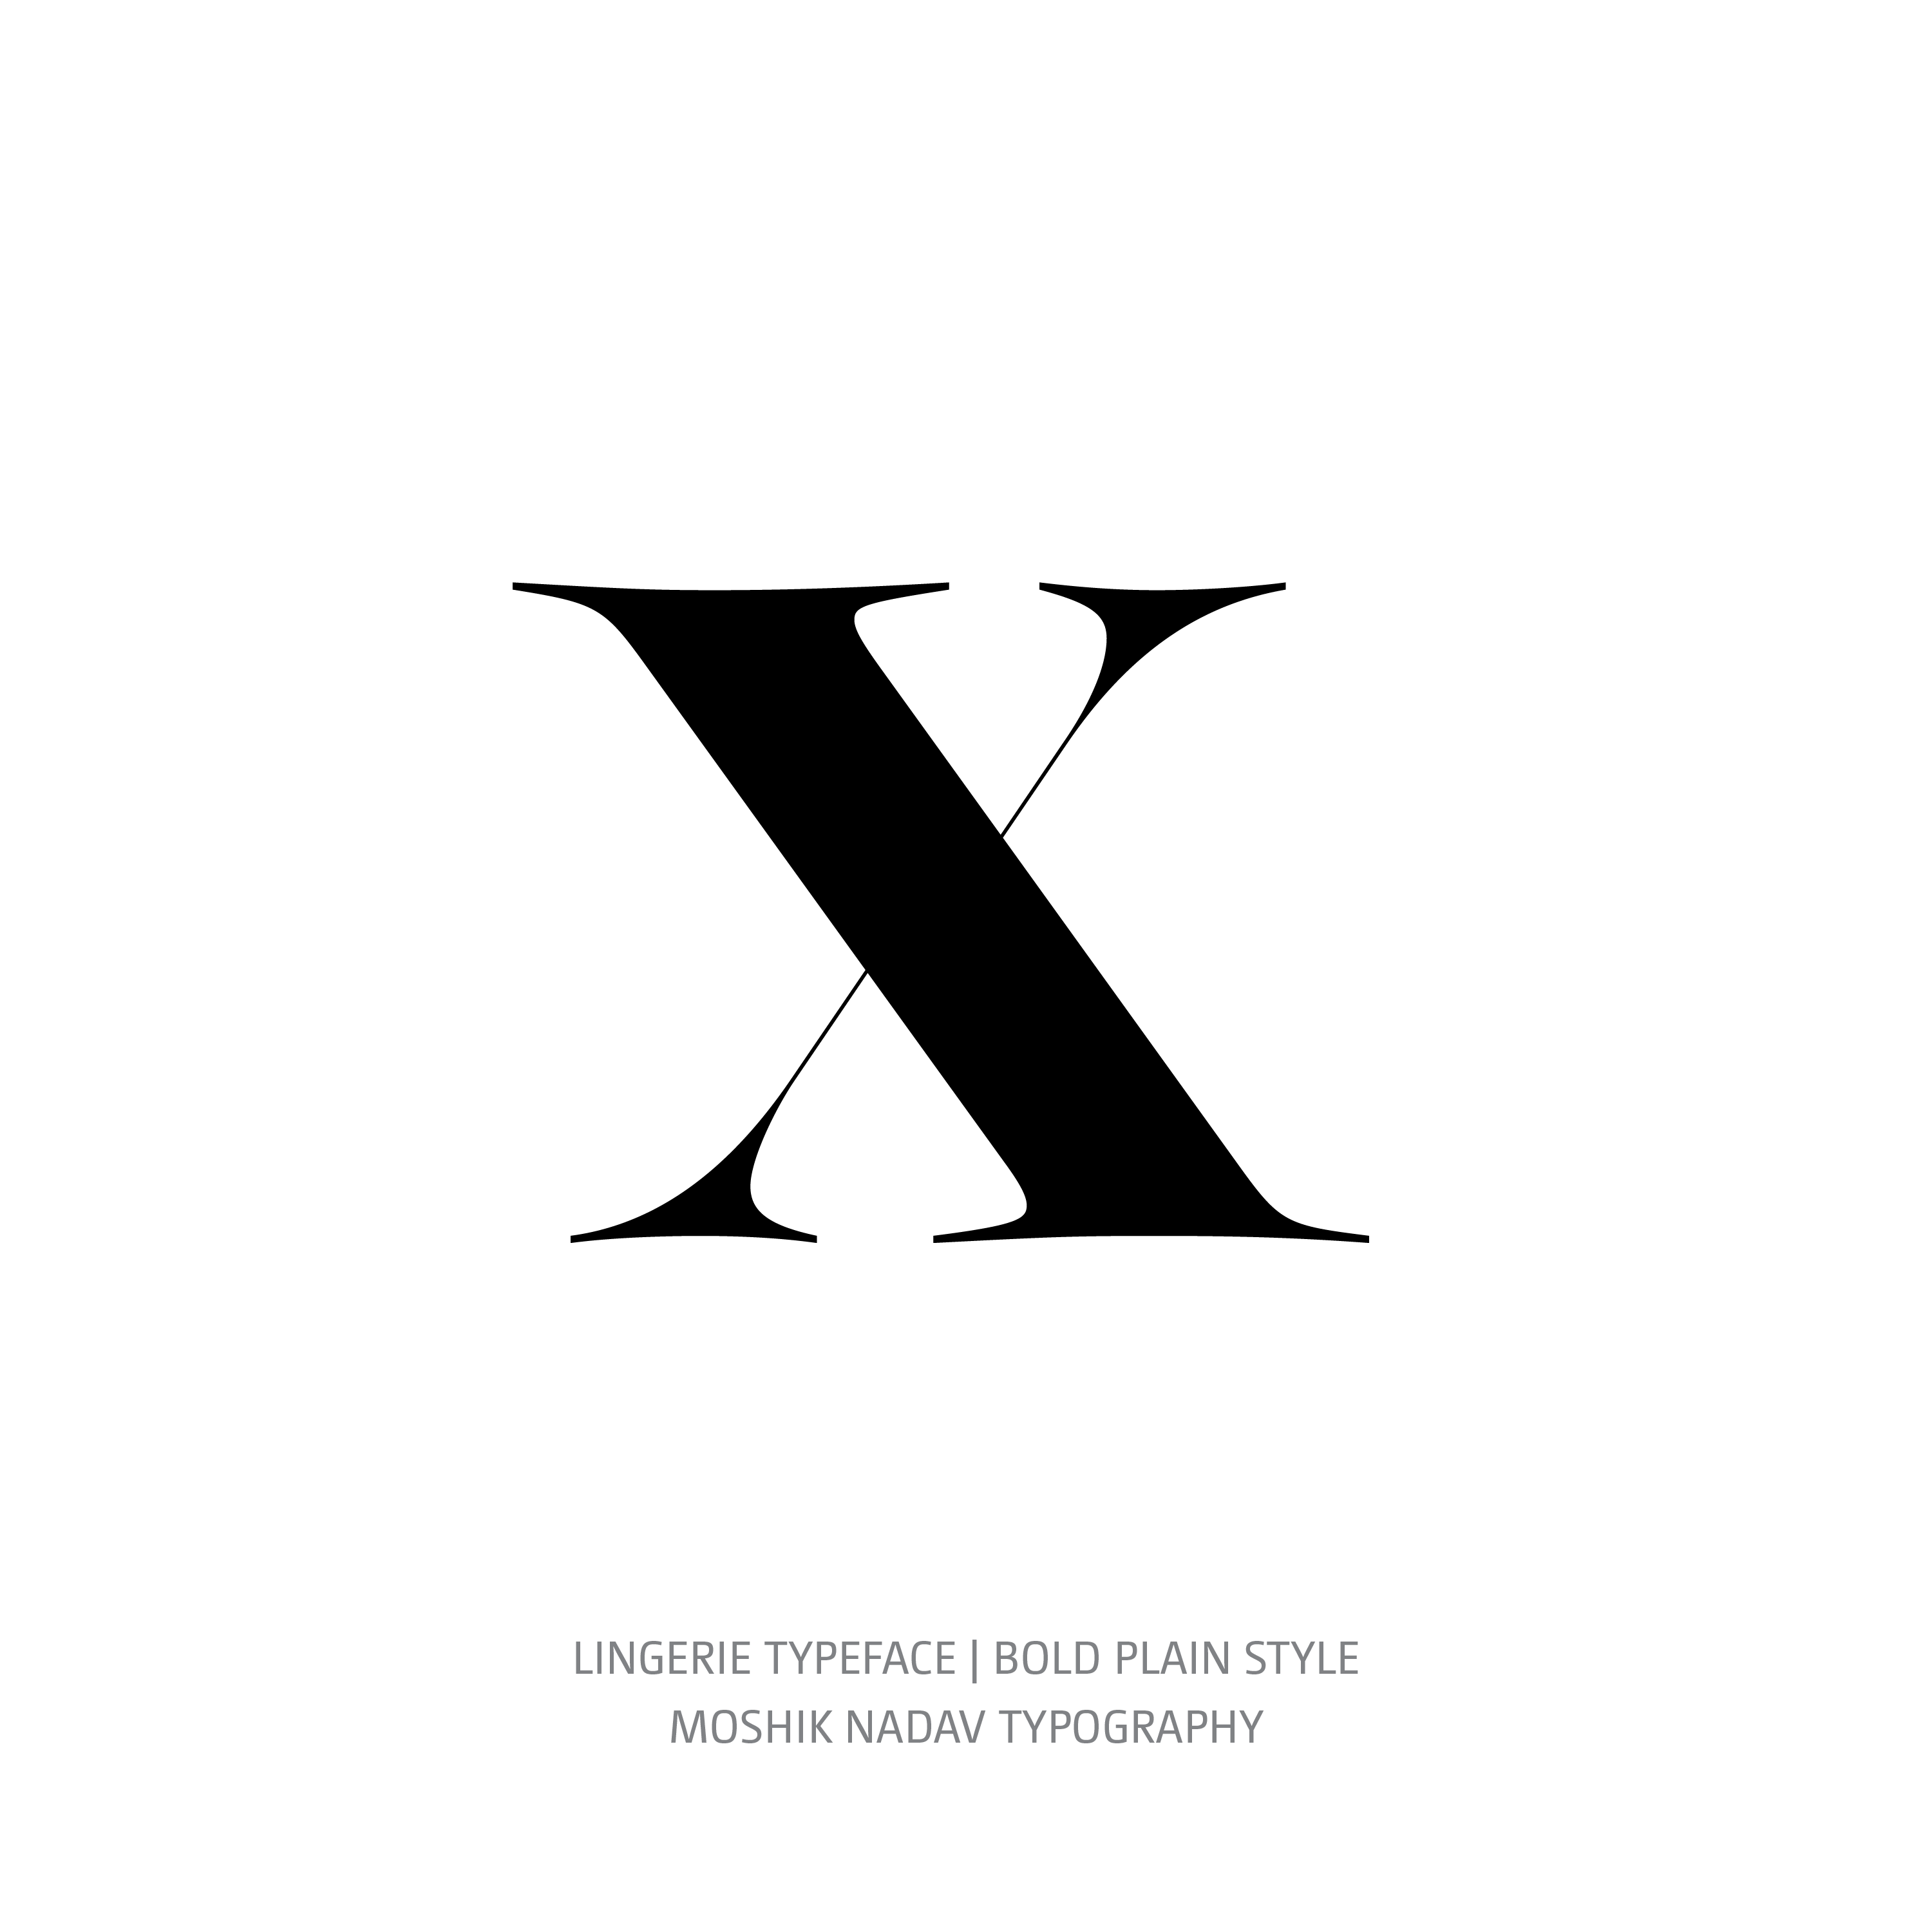 Lingerie Typeface Bold Plain x